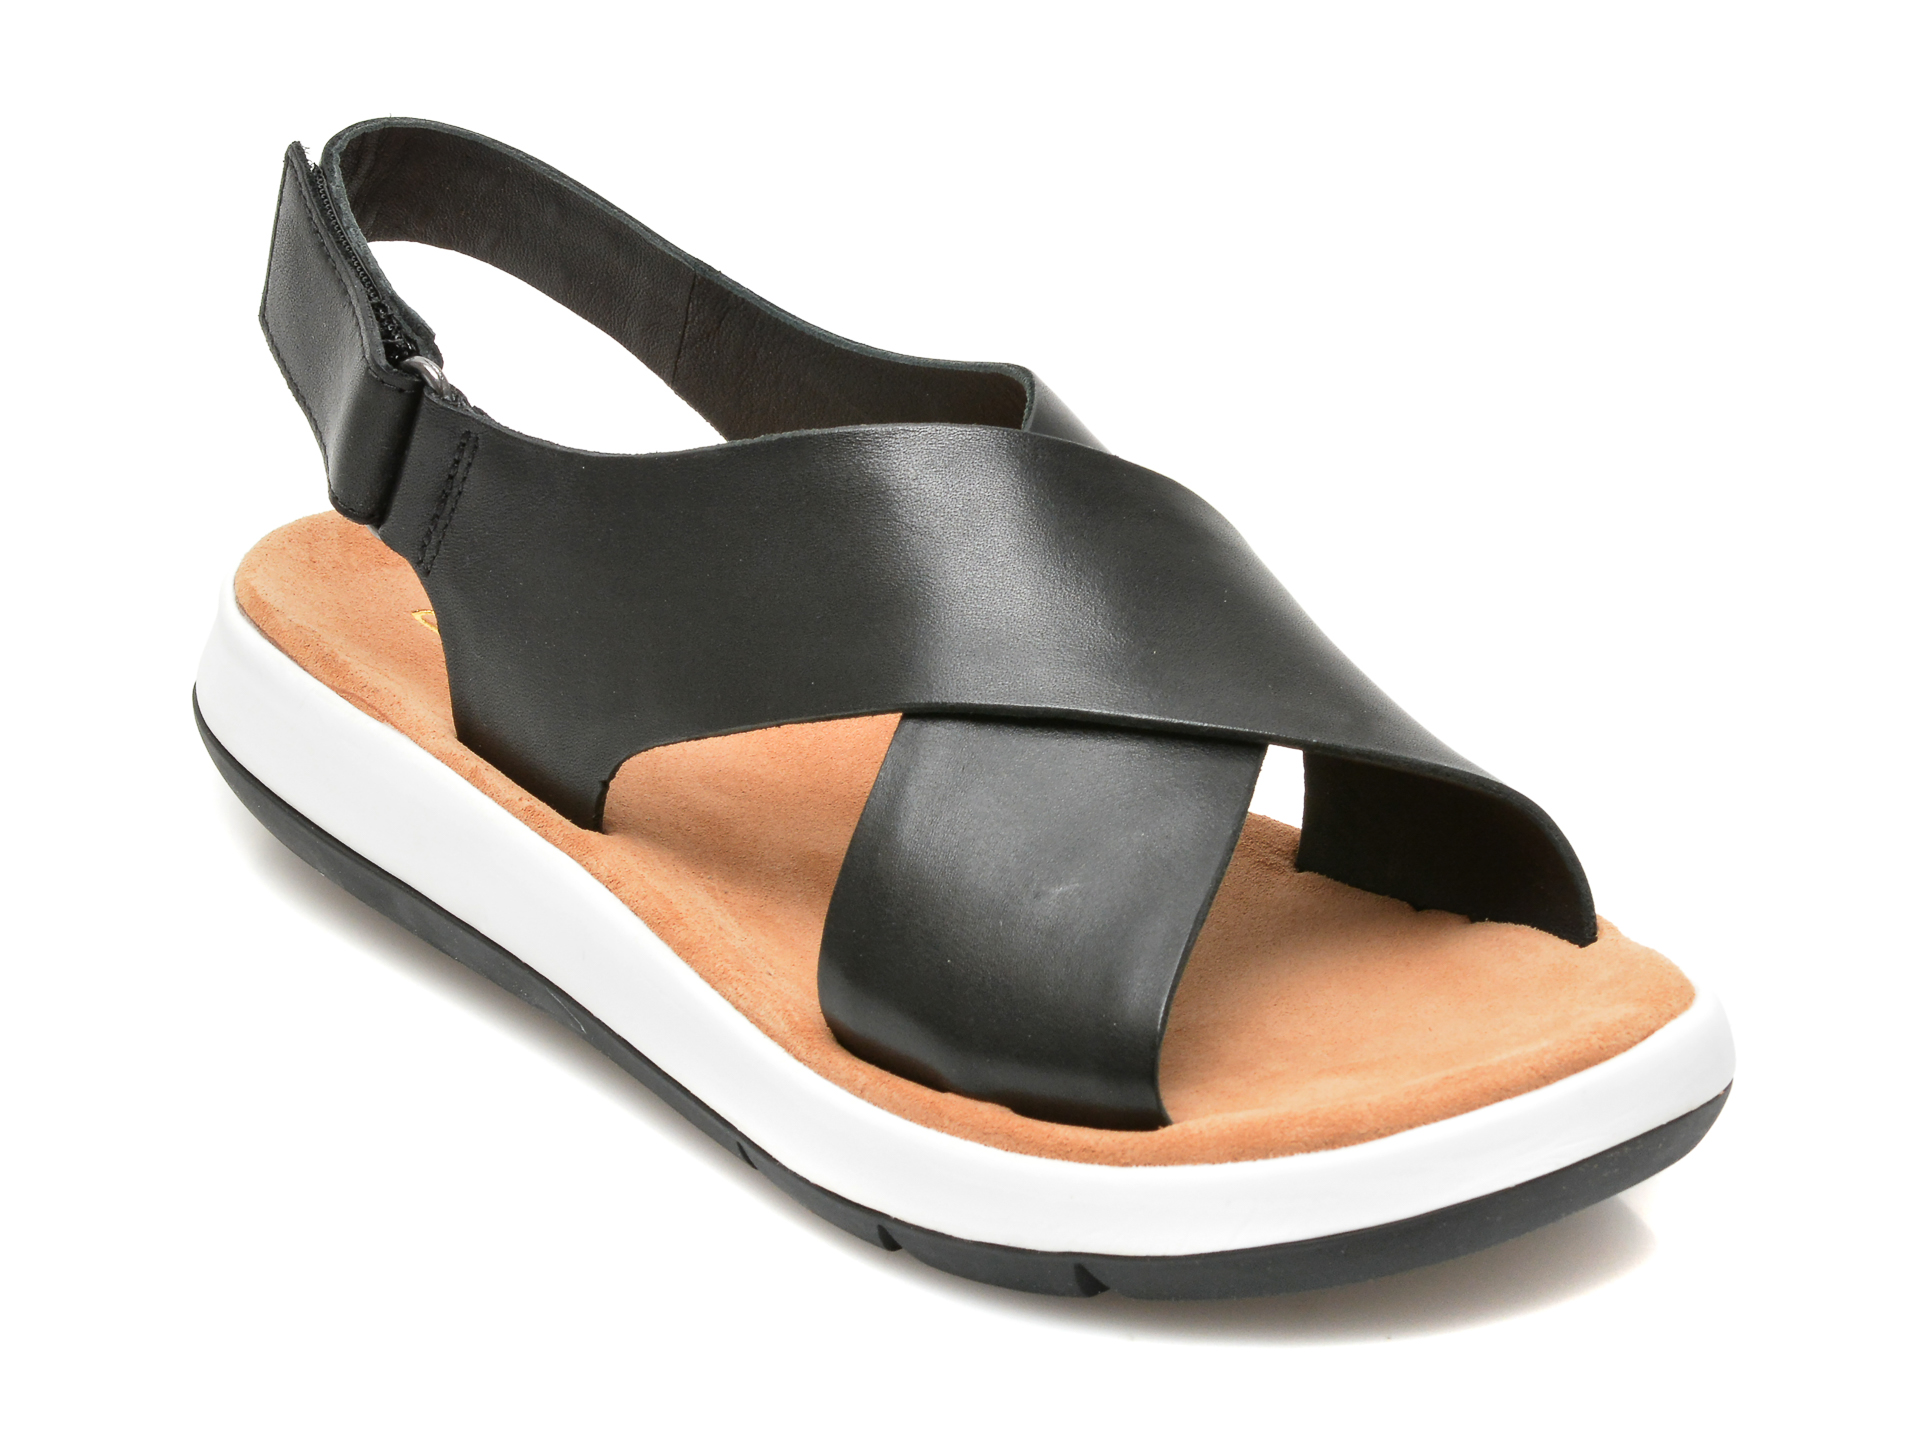 Sandale CLARKS negre, JEMSA CROSS, din piele naturala